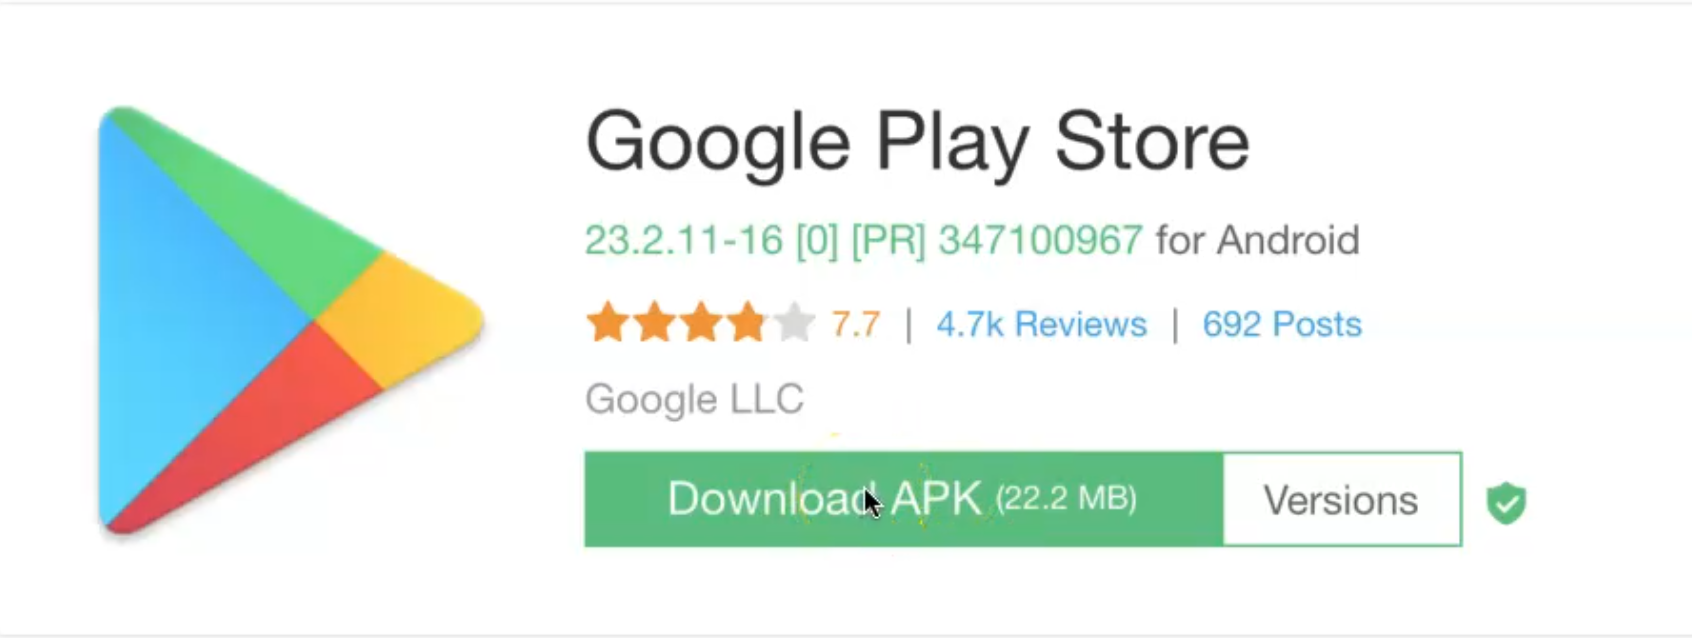 Google Play. Google Play Store. Google Play Маркет. Android Play Store. Google play добавить мир